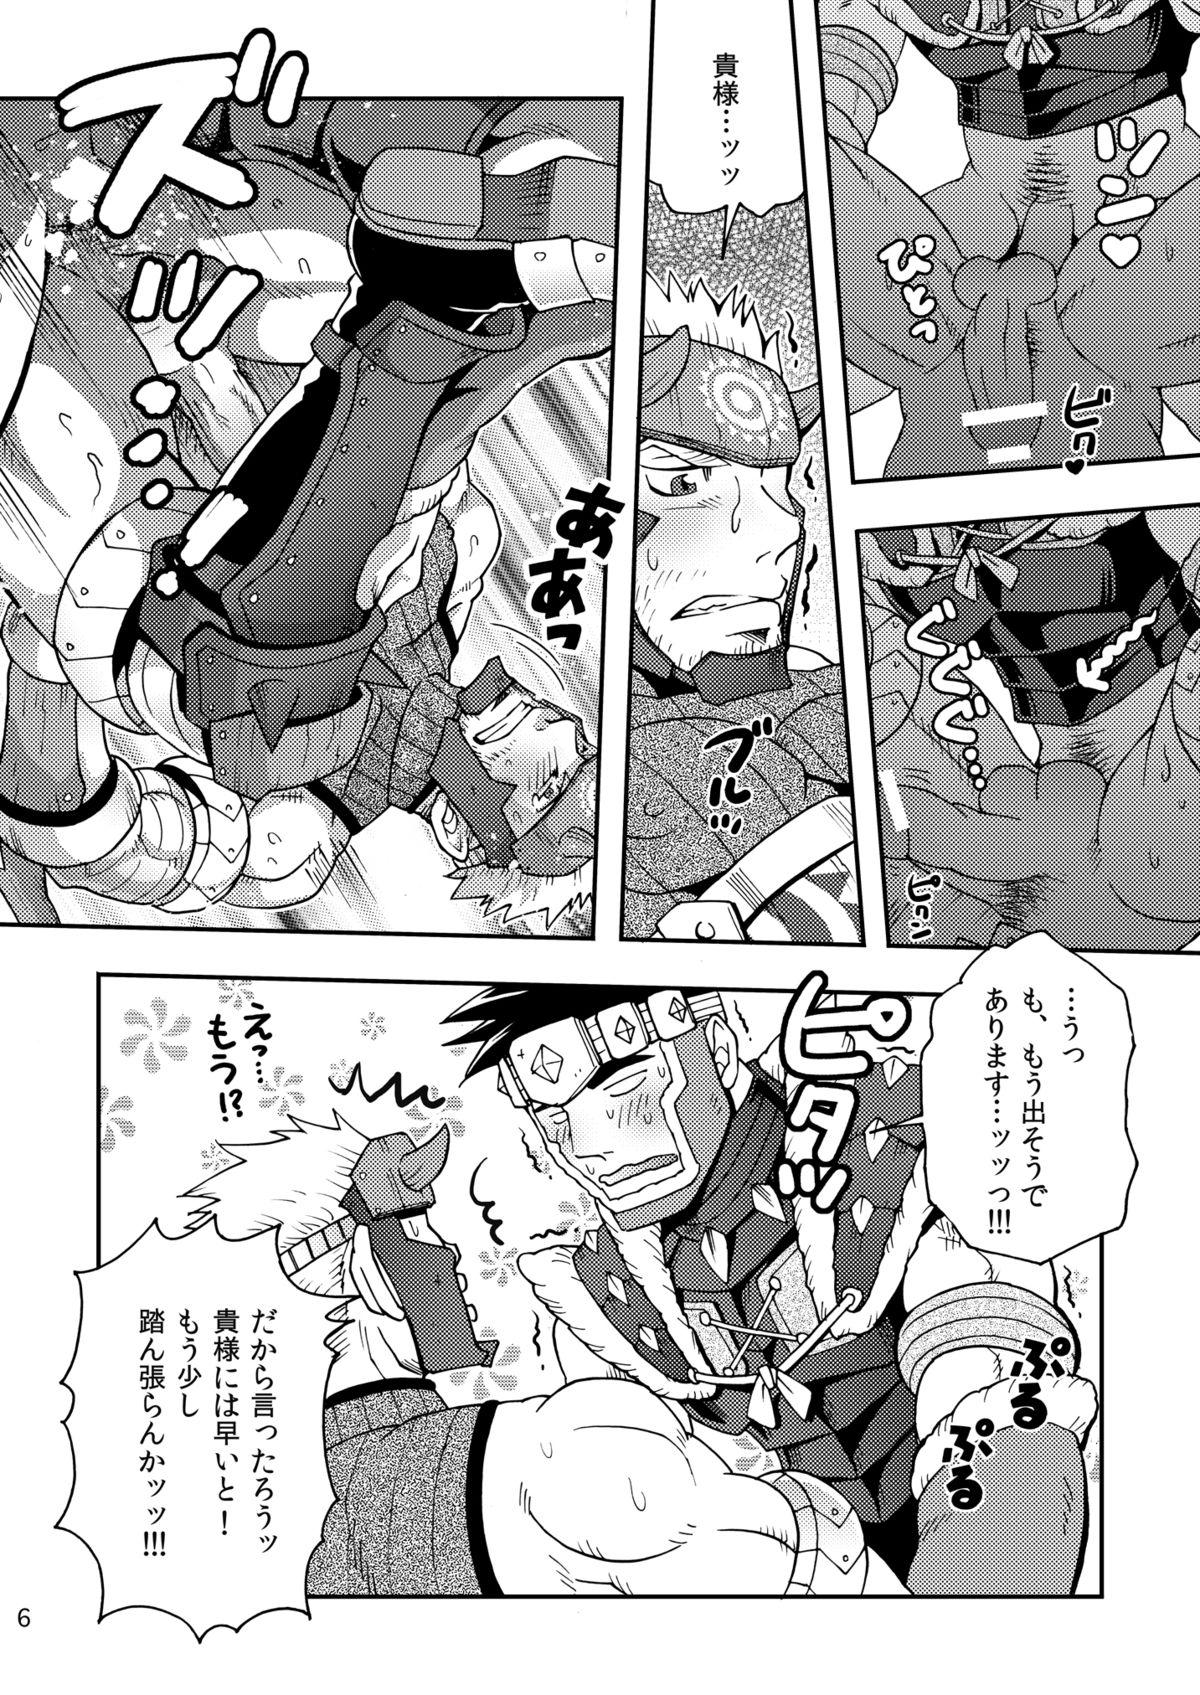 Que Wagahai no Nitro Dake ga Bakuhatsushi Souna noda! - Monster hunter Tattoo - Page 5